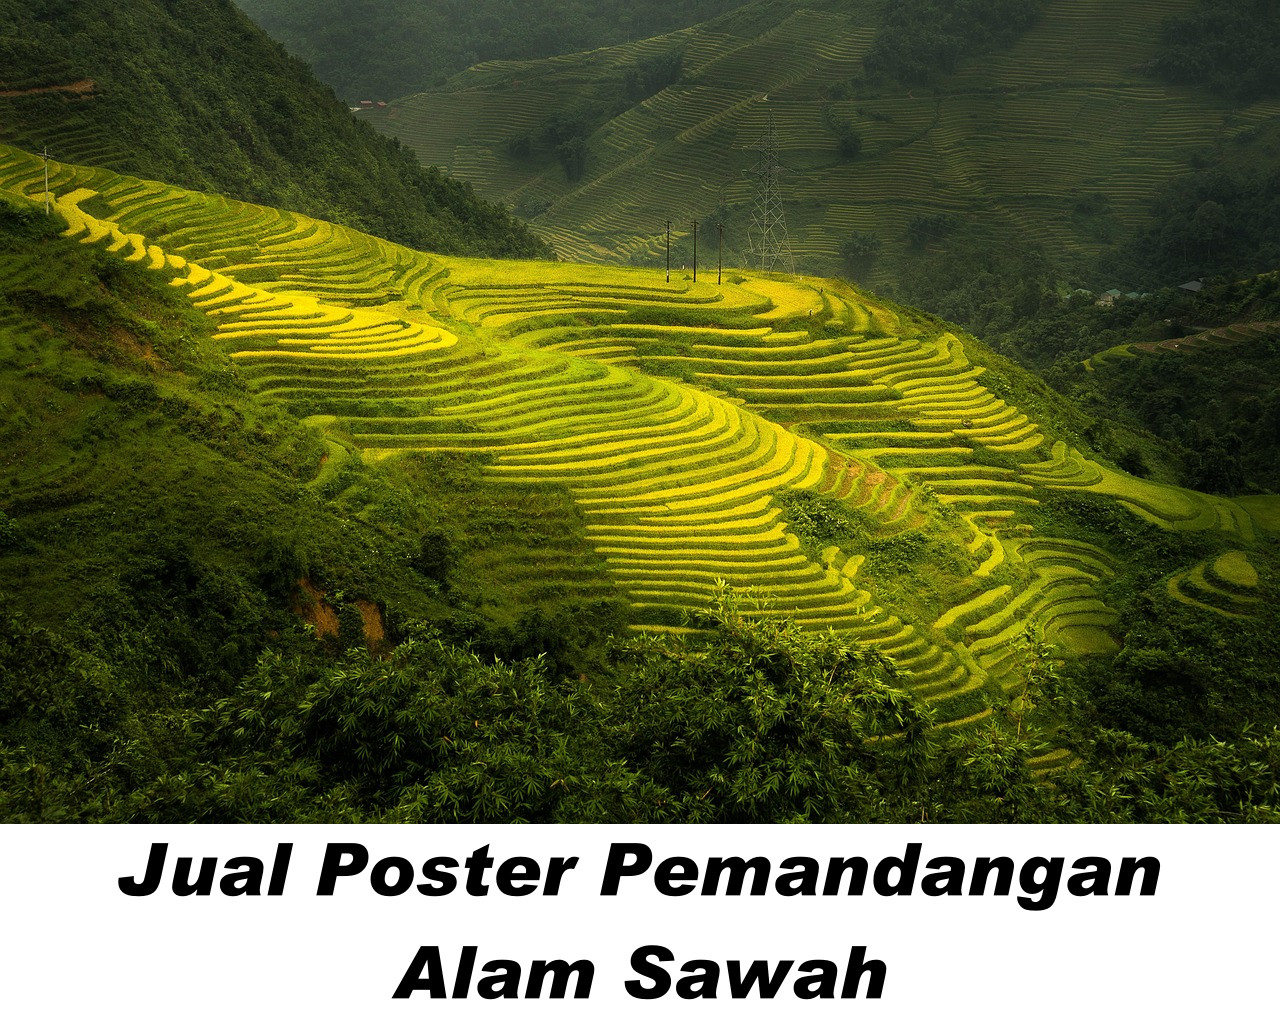 Poster pemandangan Sawah